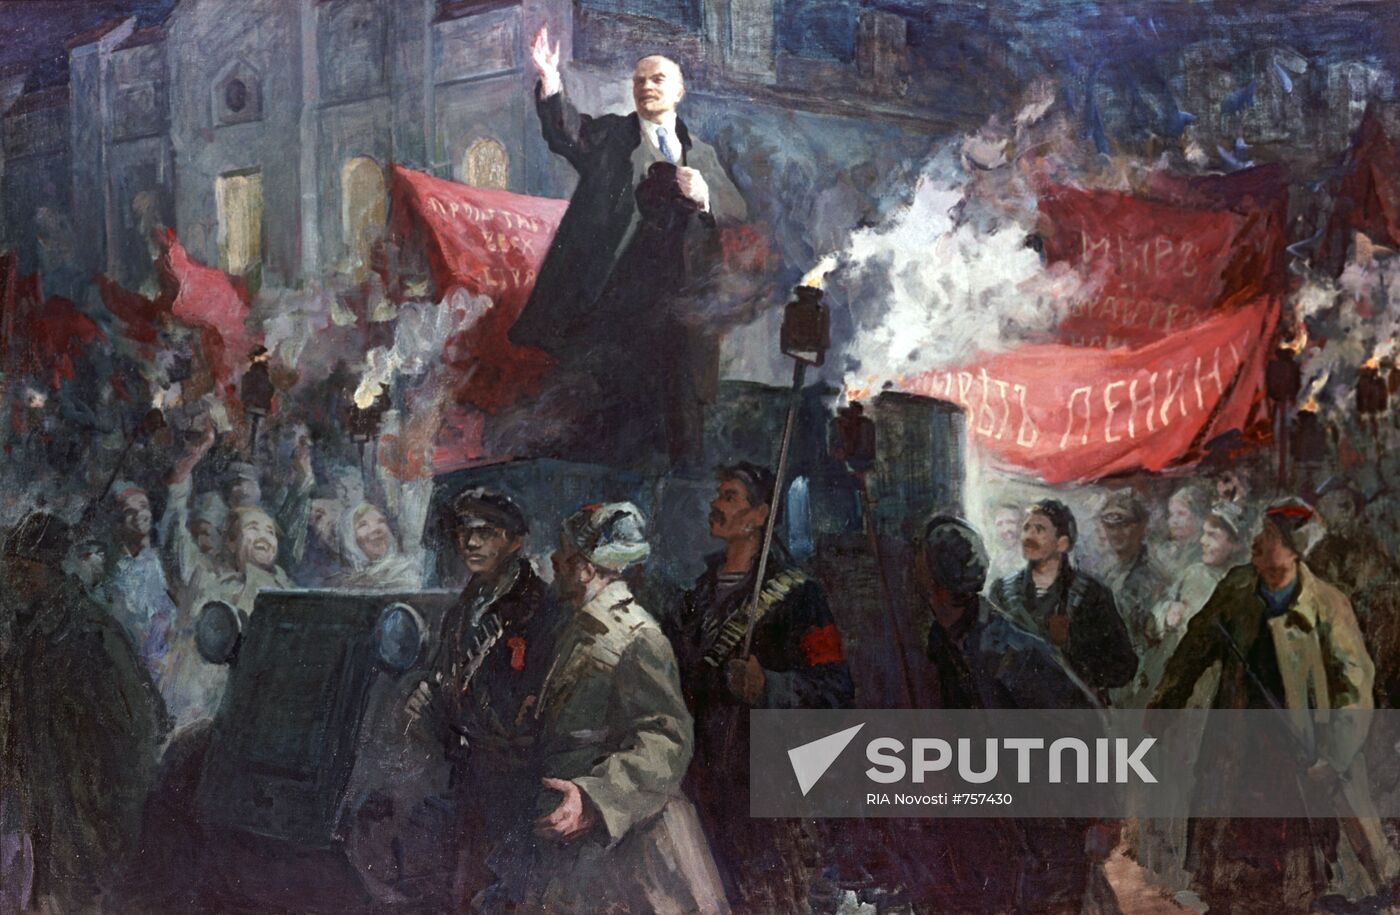 "Arrival of V. Lenin in Petrograd on April 3 (16), 1917"